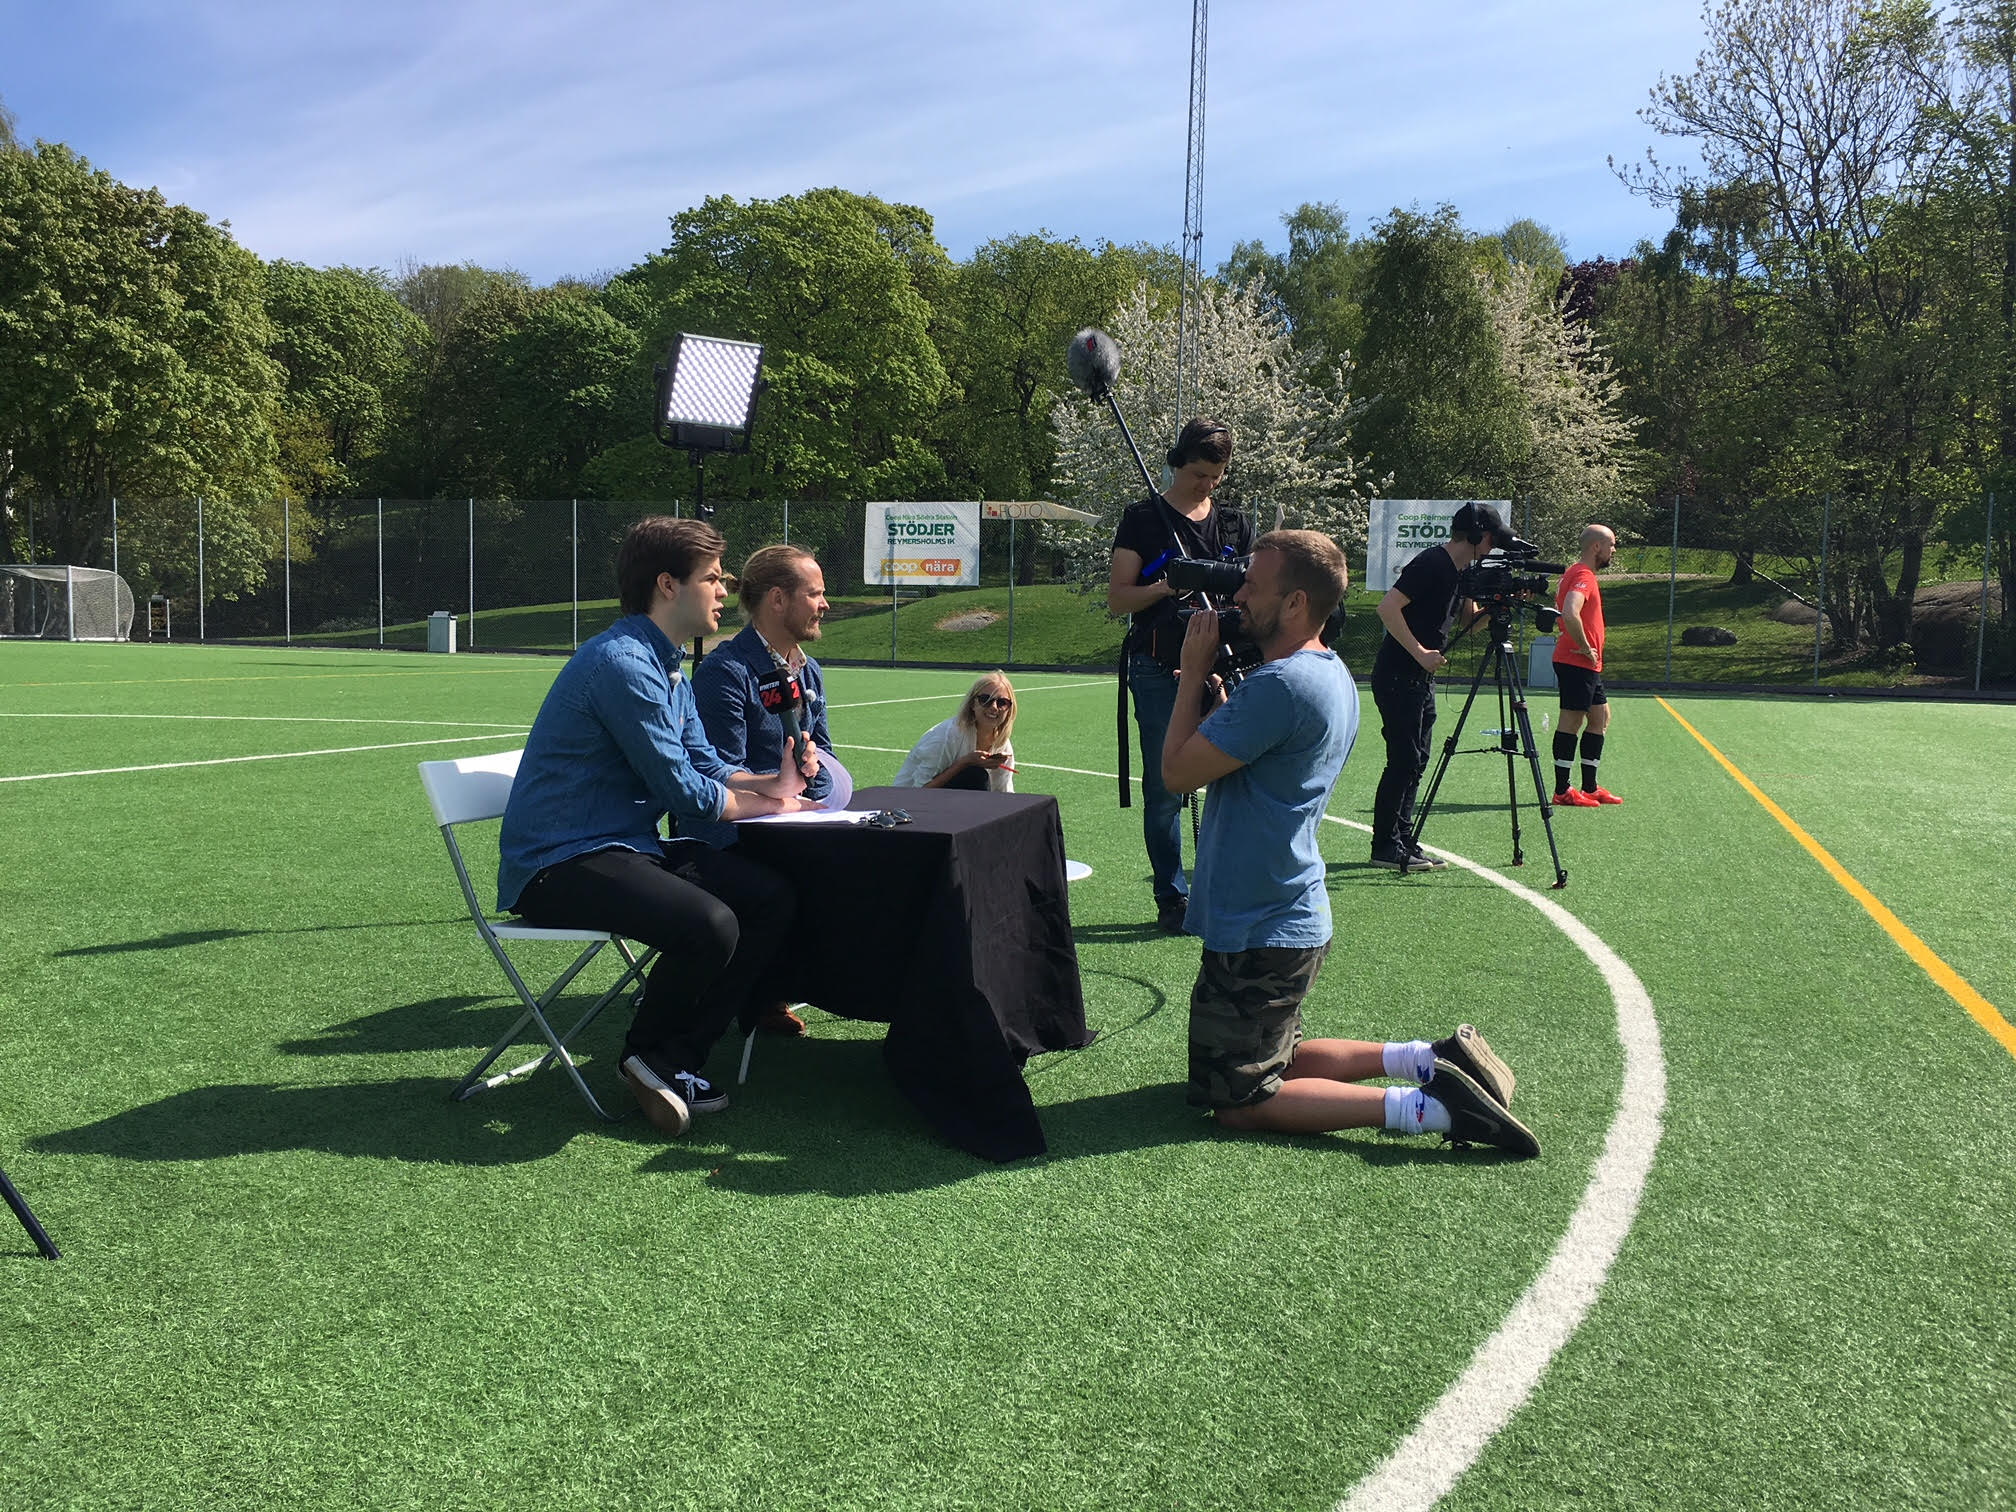 Fotbolls-EM, Tävling, Next in football, Reporter